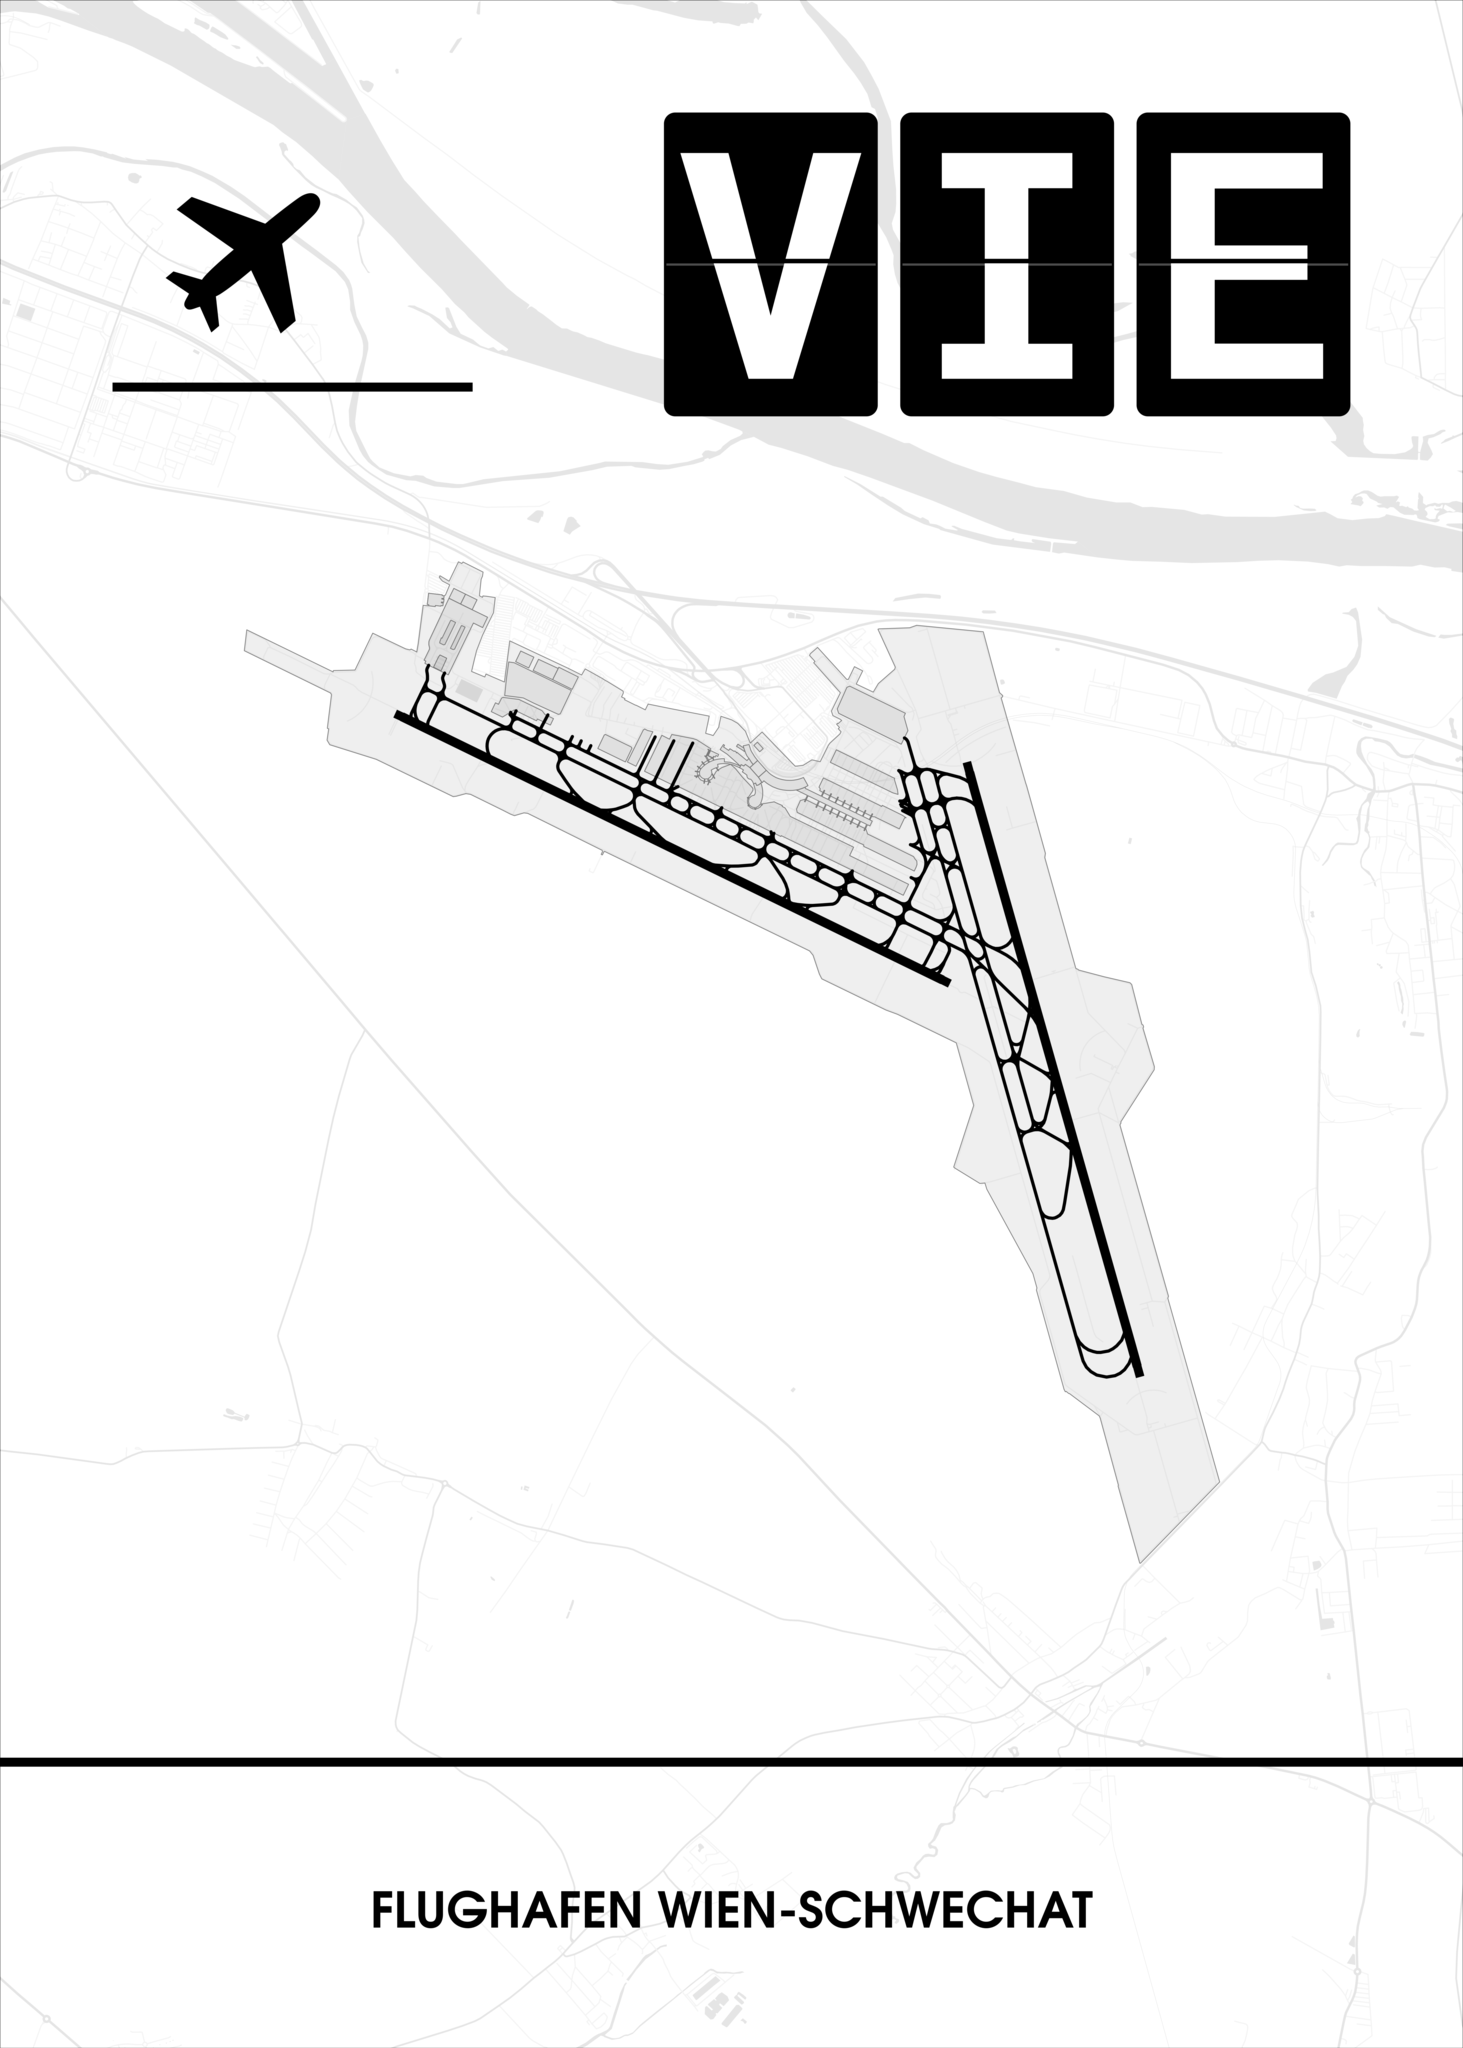 🛫 🇦🇹 Flughafen Wien-Schwechat (VIE / LOWW) Poster – CraftYourMap